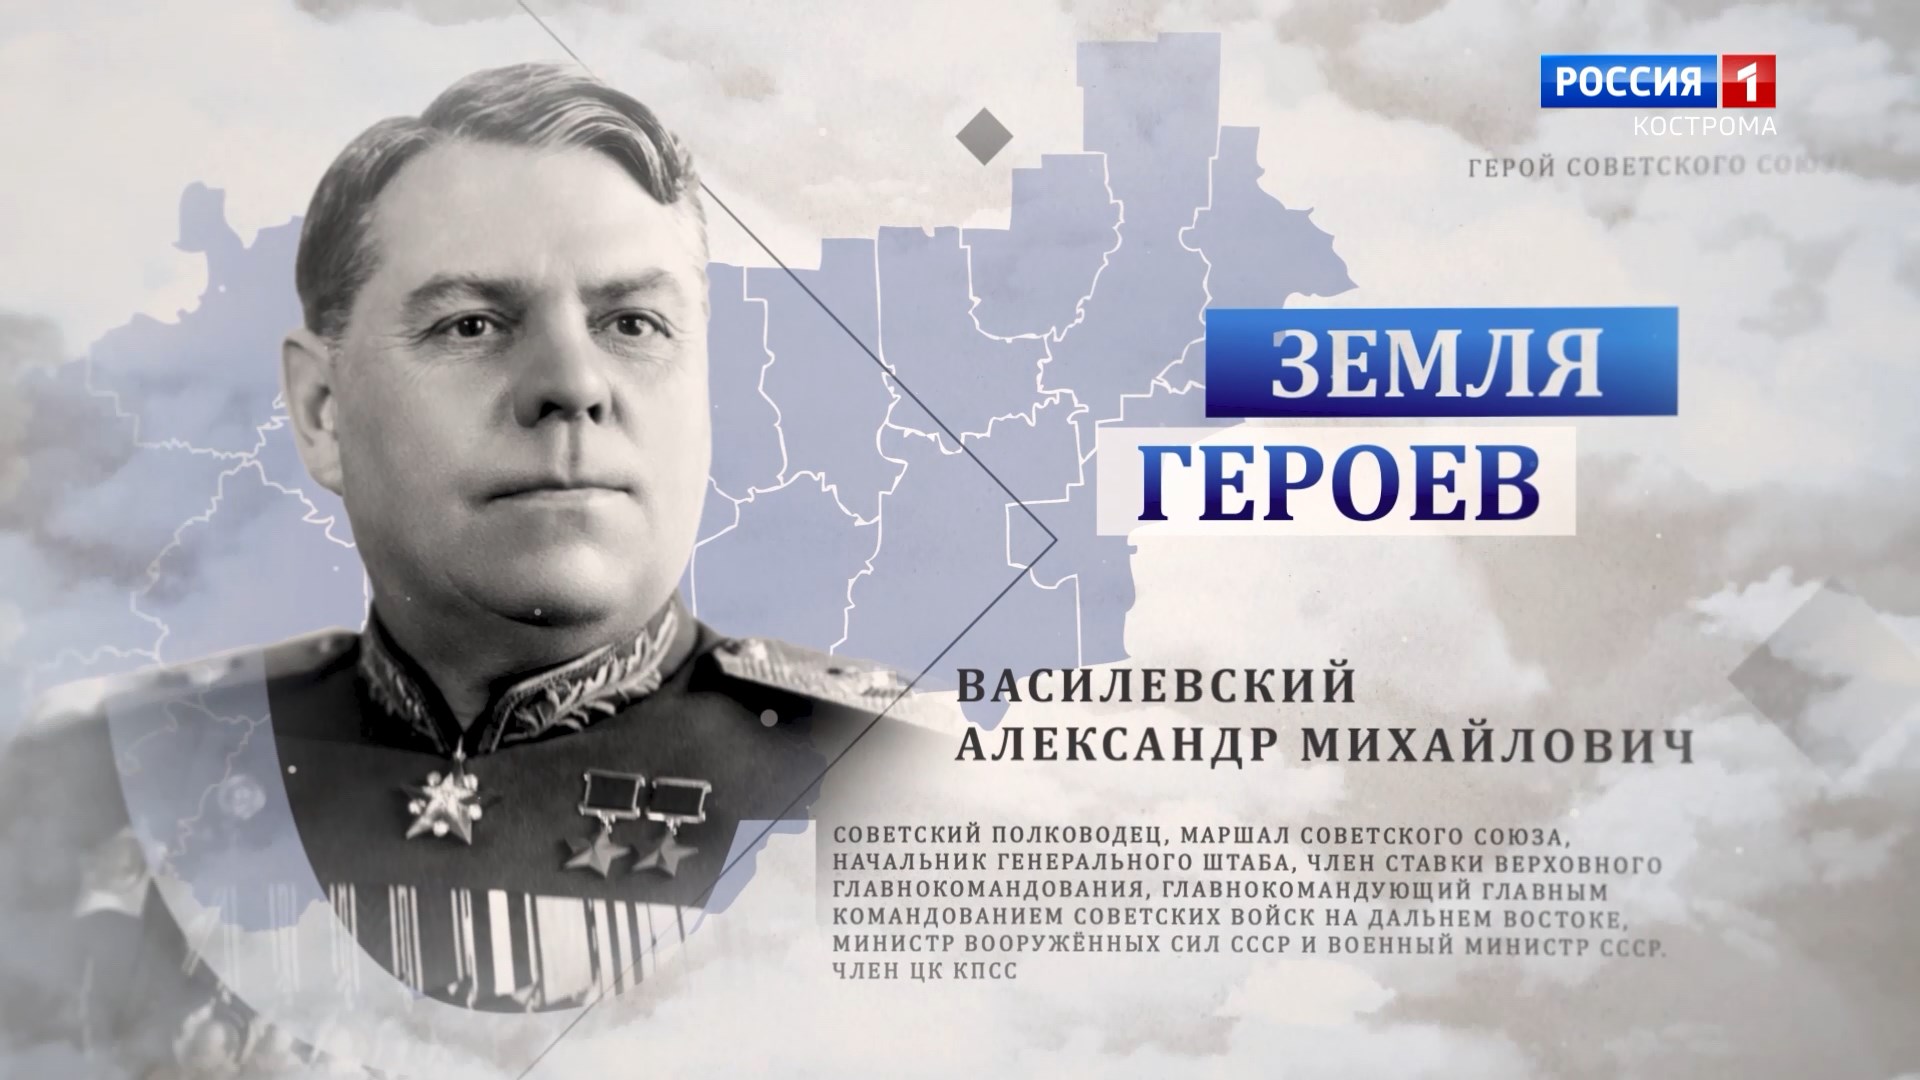 Земля героев: маршал Василевский